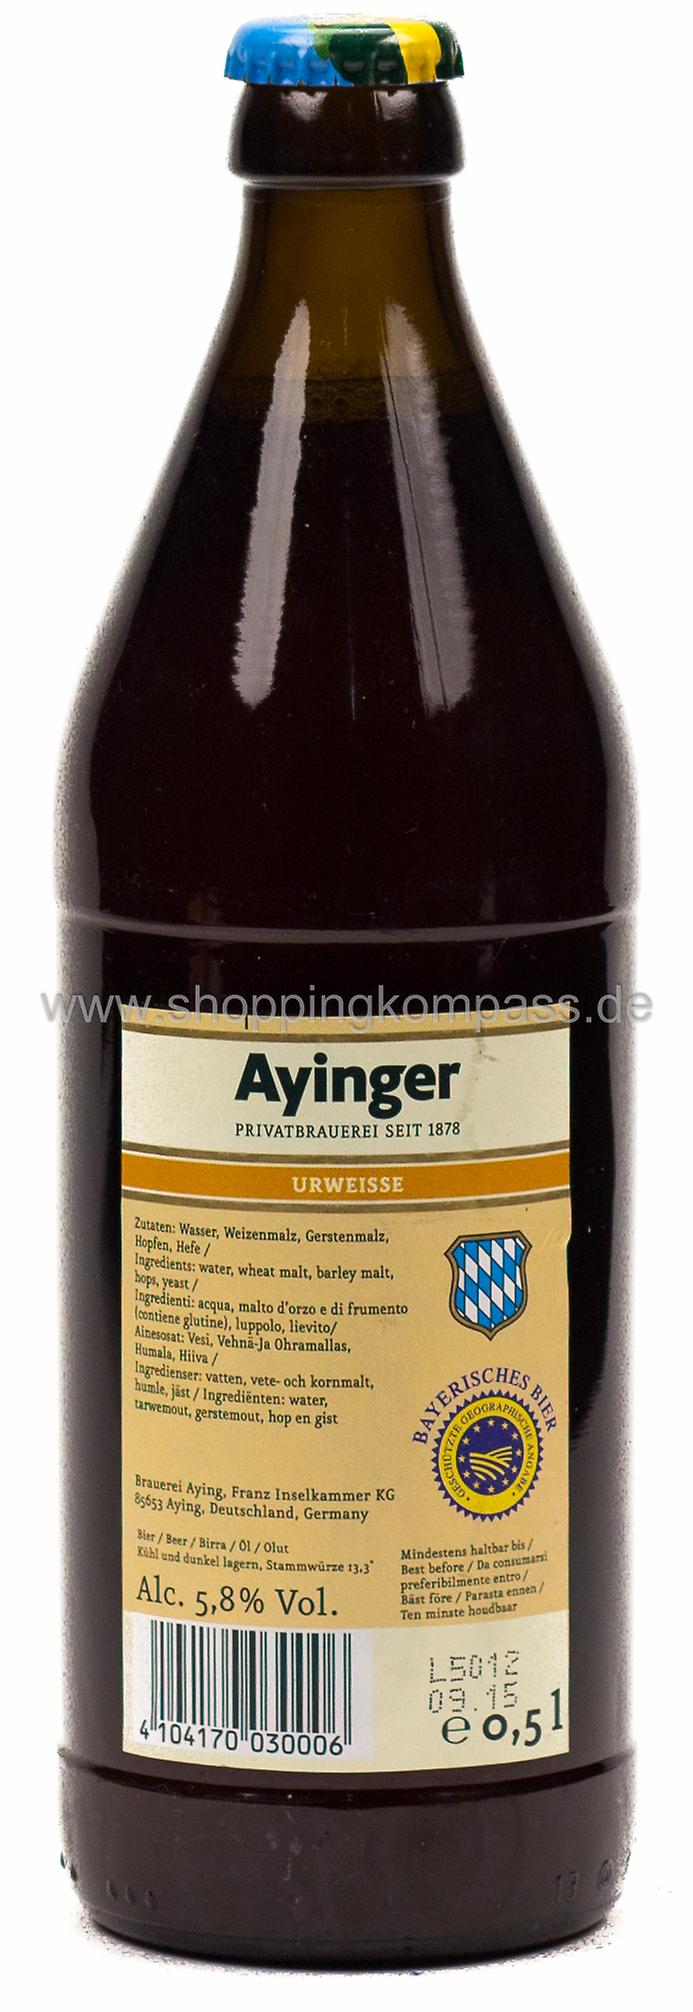 Ayinger Urweisse Kasten 20 x 0,5 l Glas Mehrweg